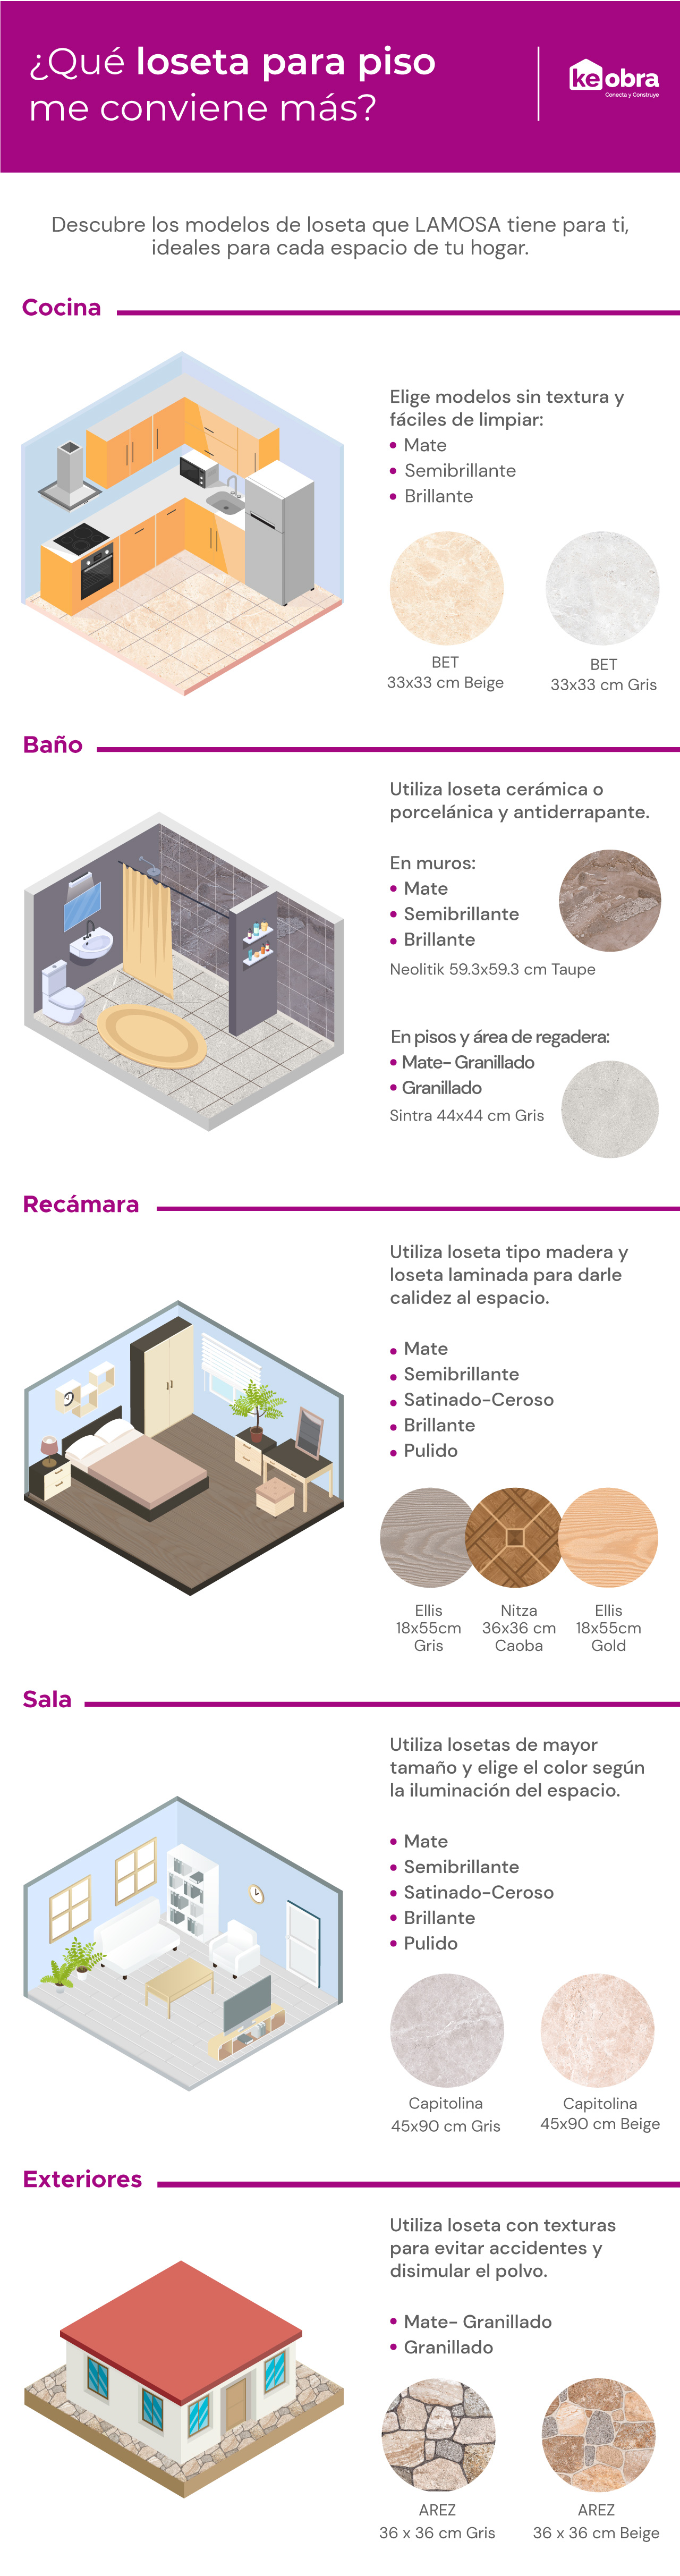 Conoce los diferentes tipos de loseta para piso y muros de Lamosa ideales según el espacio de tu casa en el que la vas a instalar